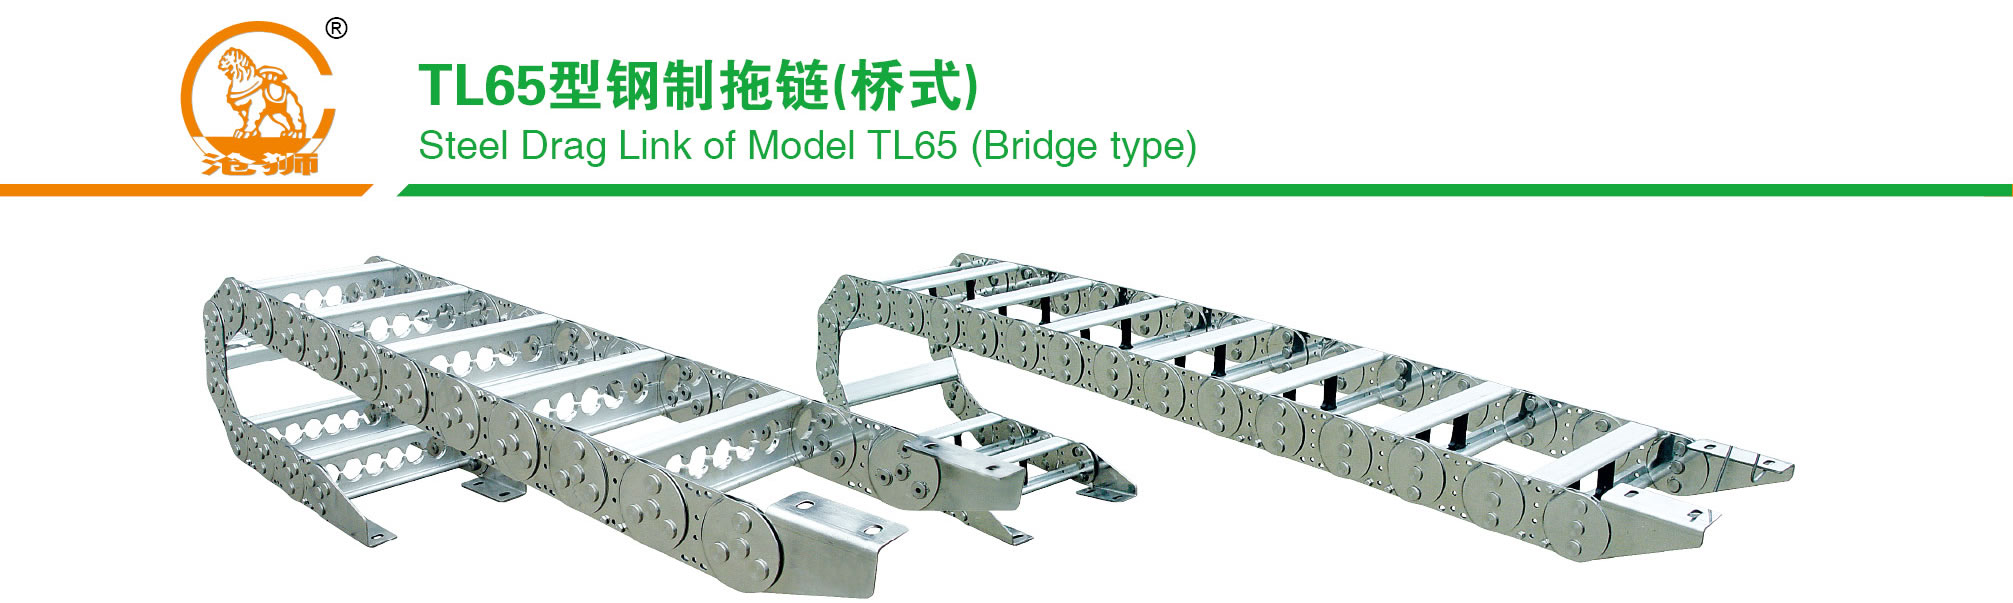 TL65型钢制拖链产品示意图